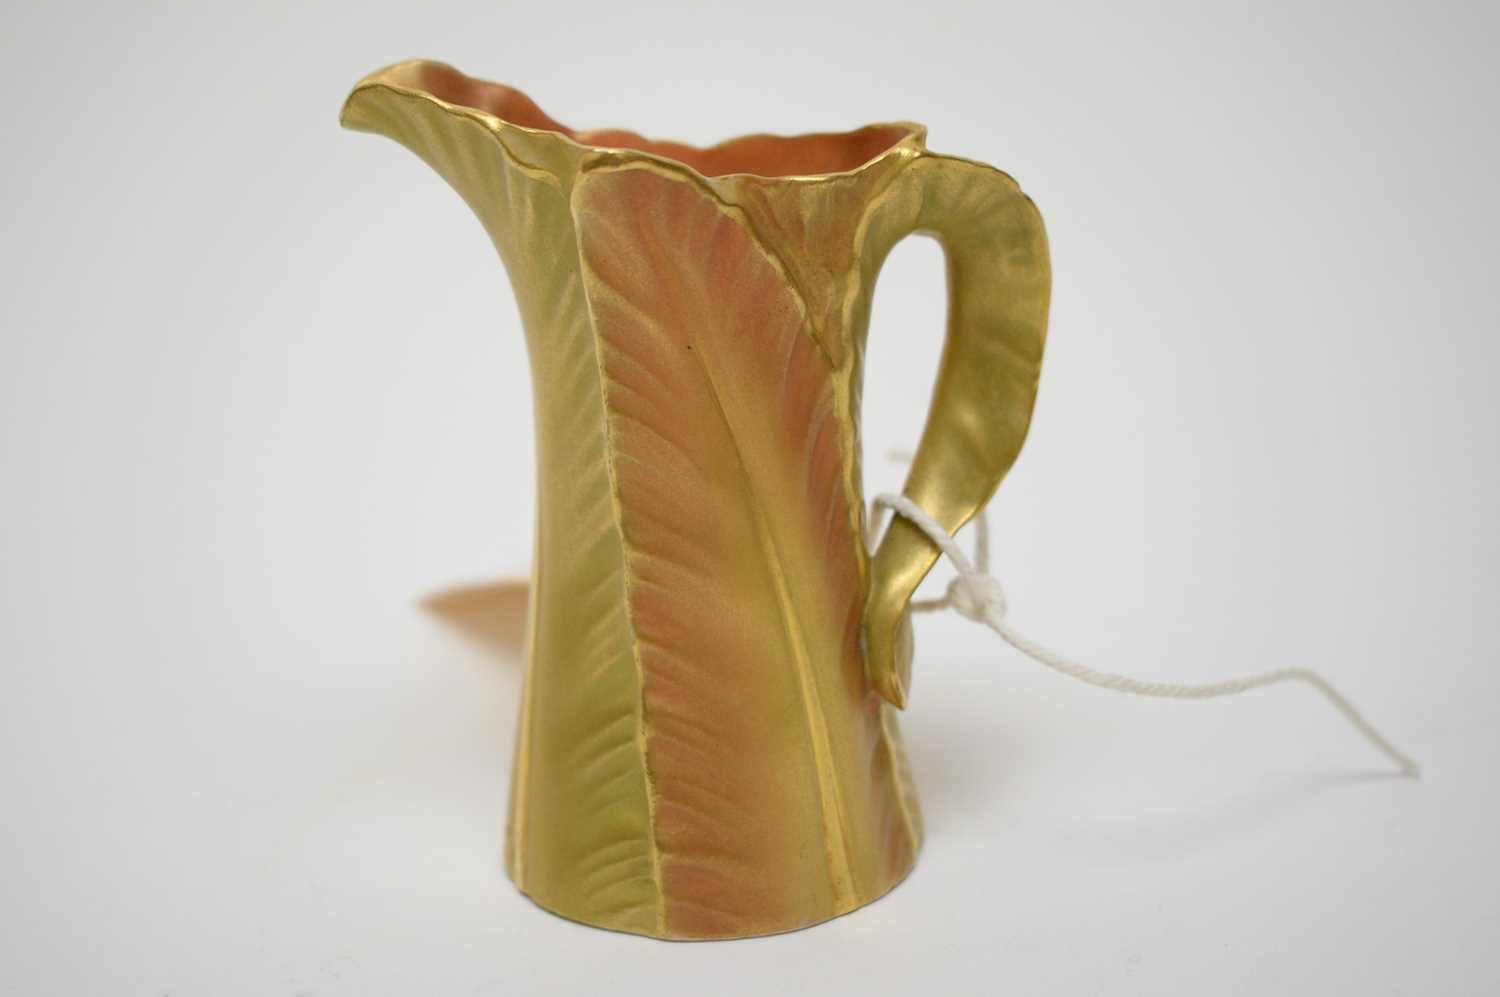 Royal Worcester Blush Ivory twin handled urn vase, together with a Royal Worcester jug - Image 4 of 5